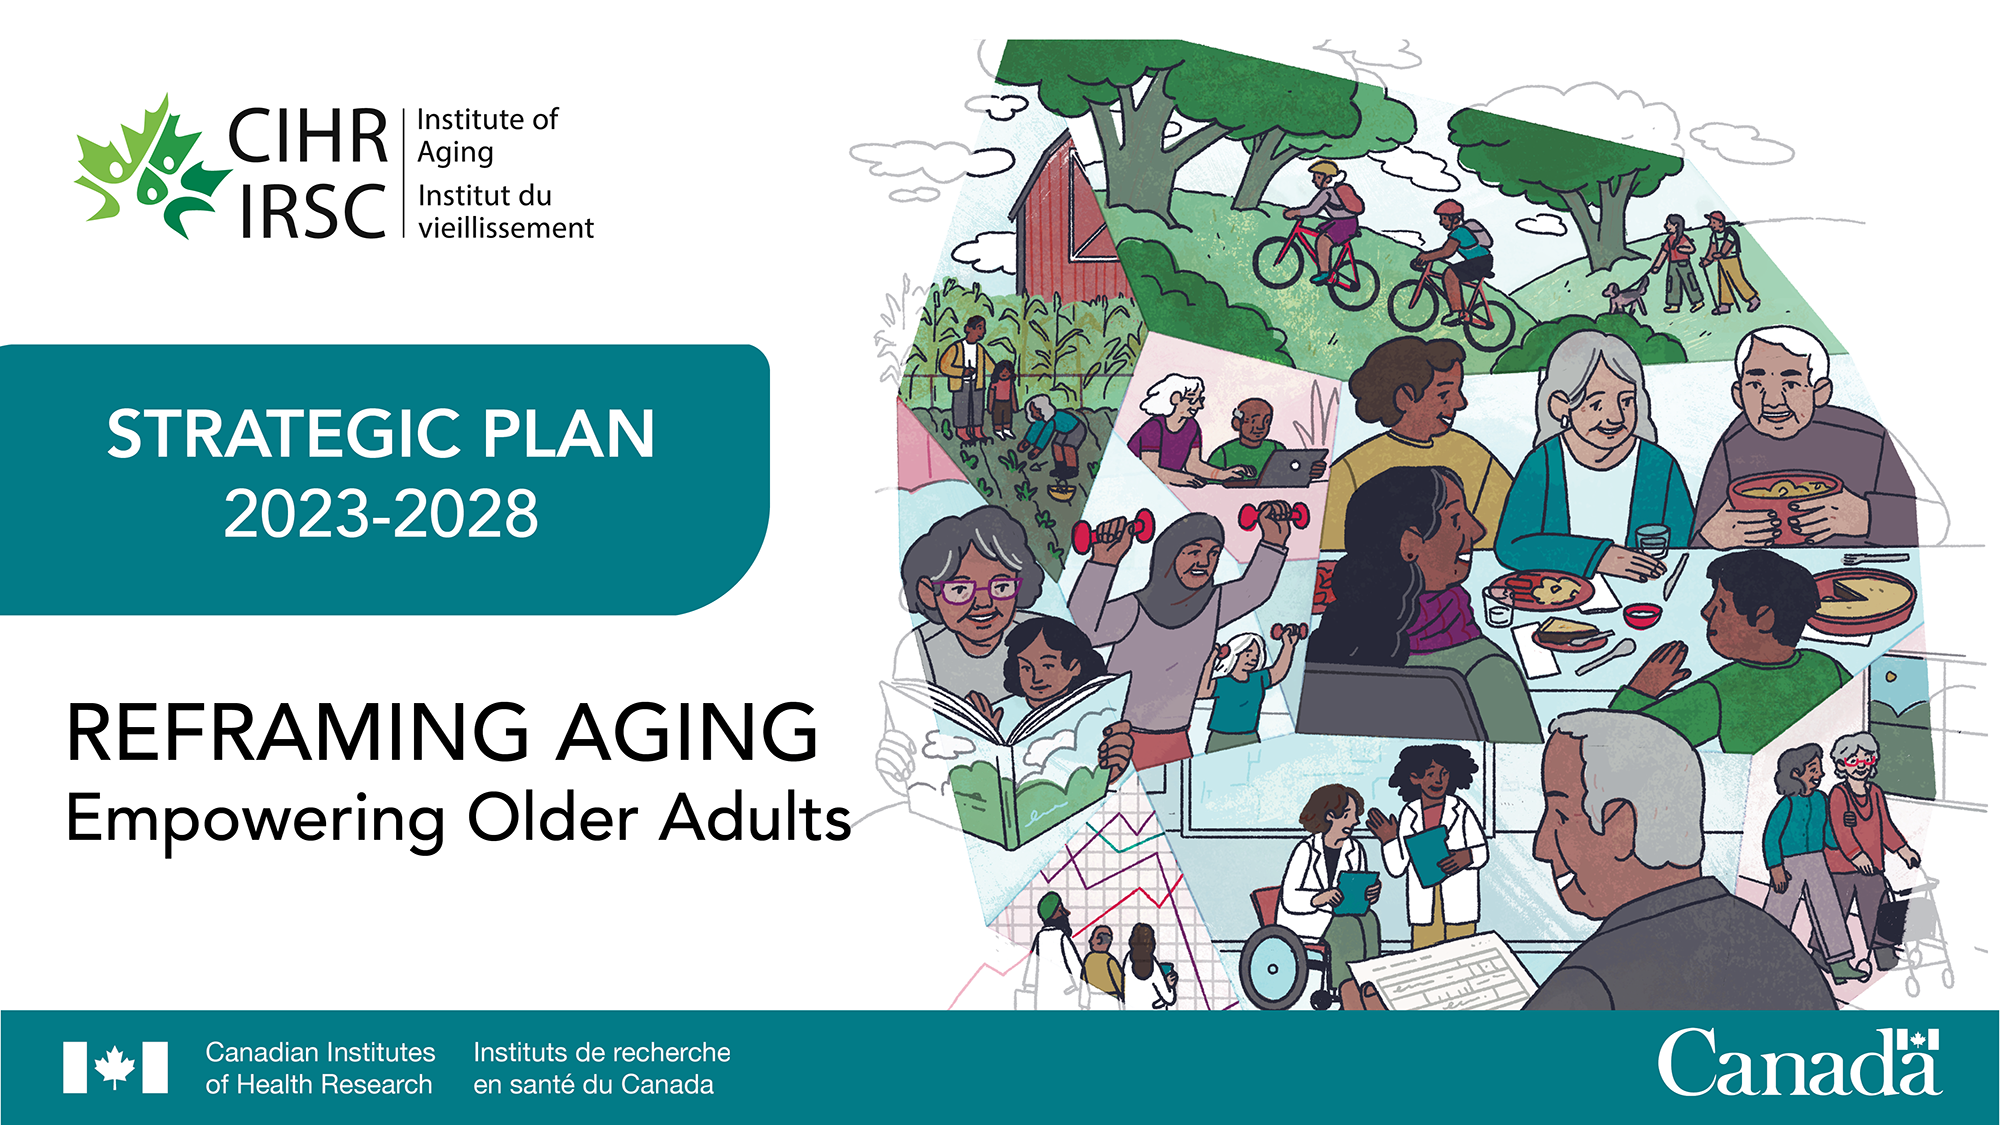 CIHR Institute of Aging Strategic Plan 2023-2028